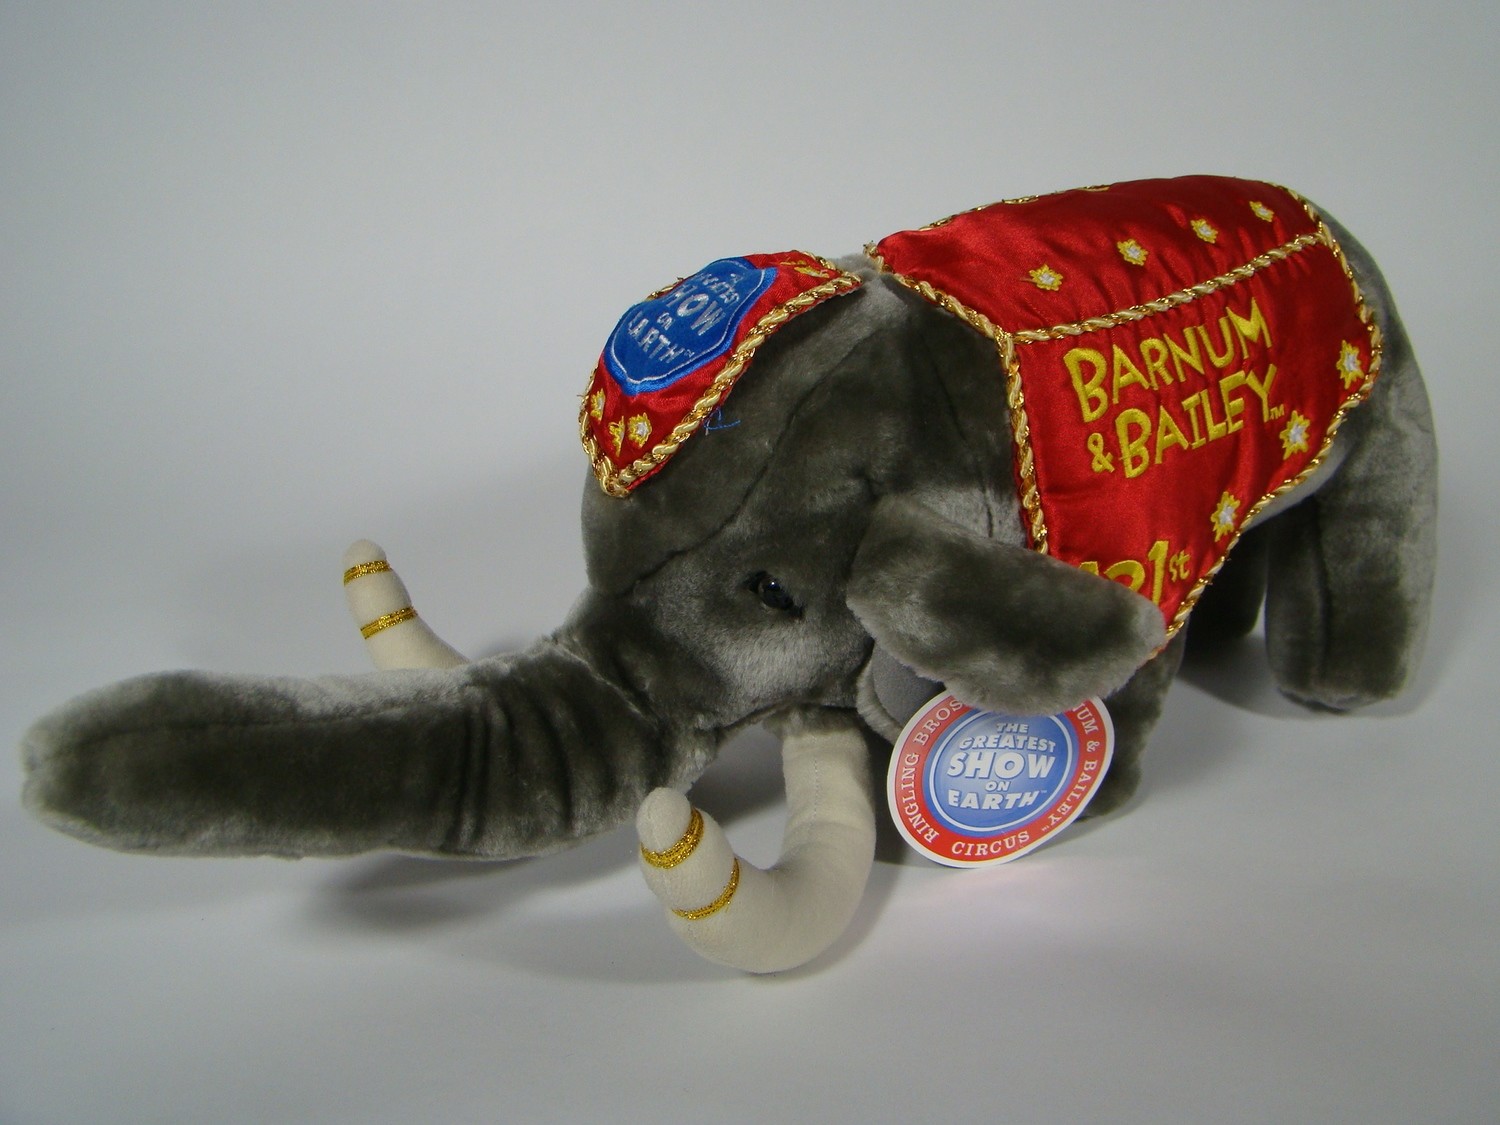 barnum and bailey stuffed elephant